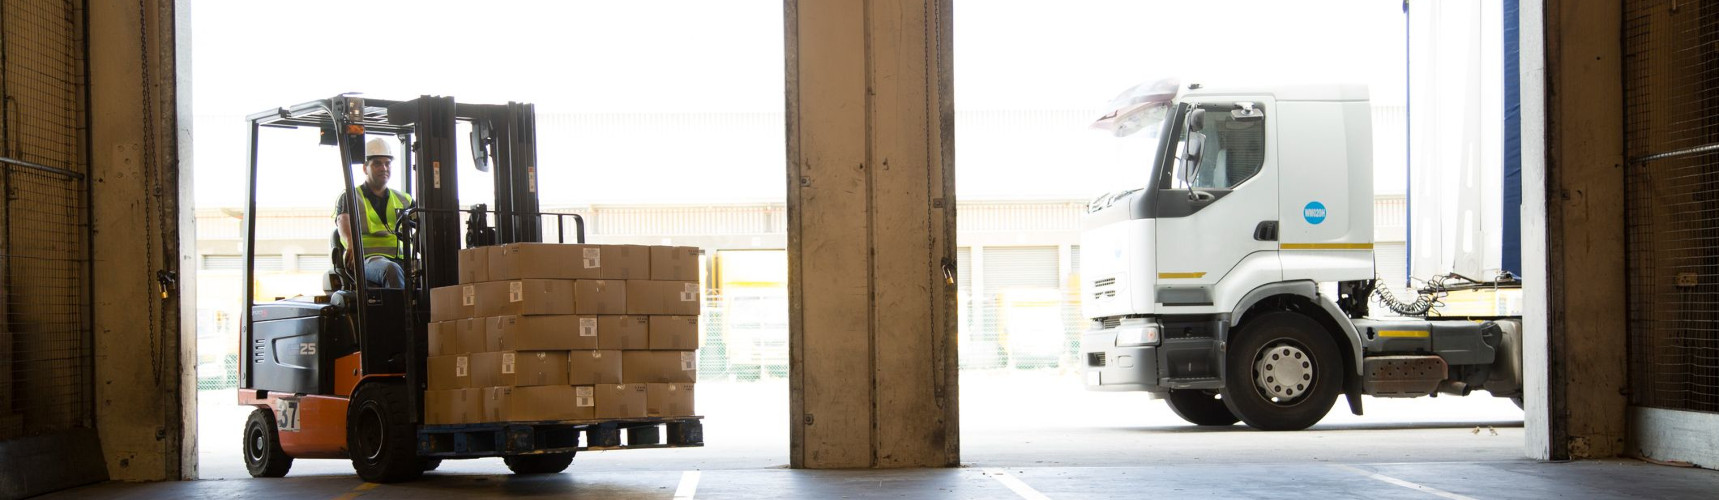 Gestão de supply chain: uma máquina carrega várias caixas de entregas dentro de uma armazém, ao lado da porta há um caminhão